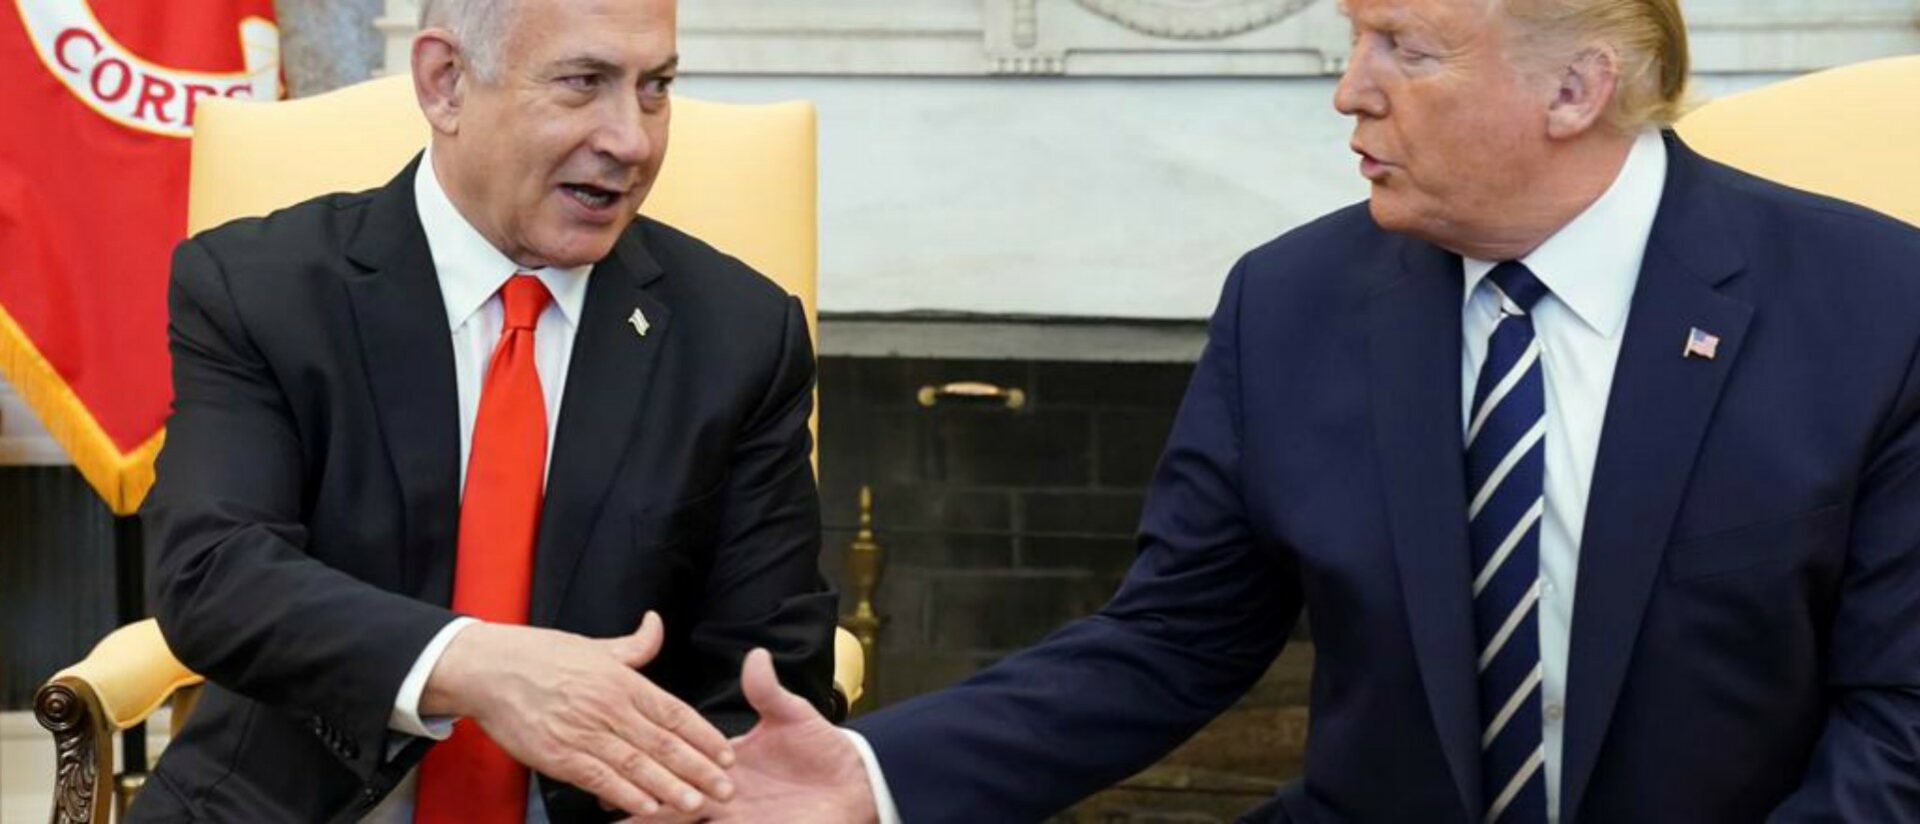 Netanyahu et Trump ont concocté un soi-disant "plan de paix" sans consulter les Palestiniens | © B'Tselem